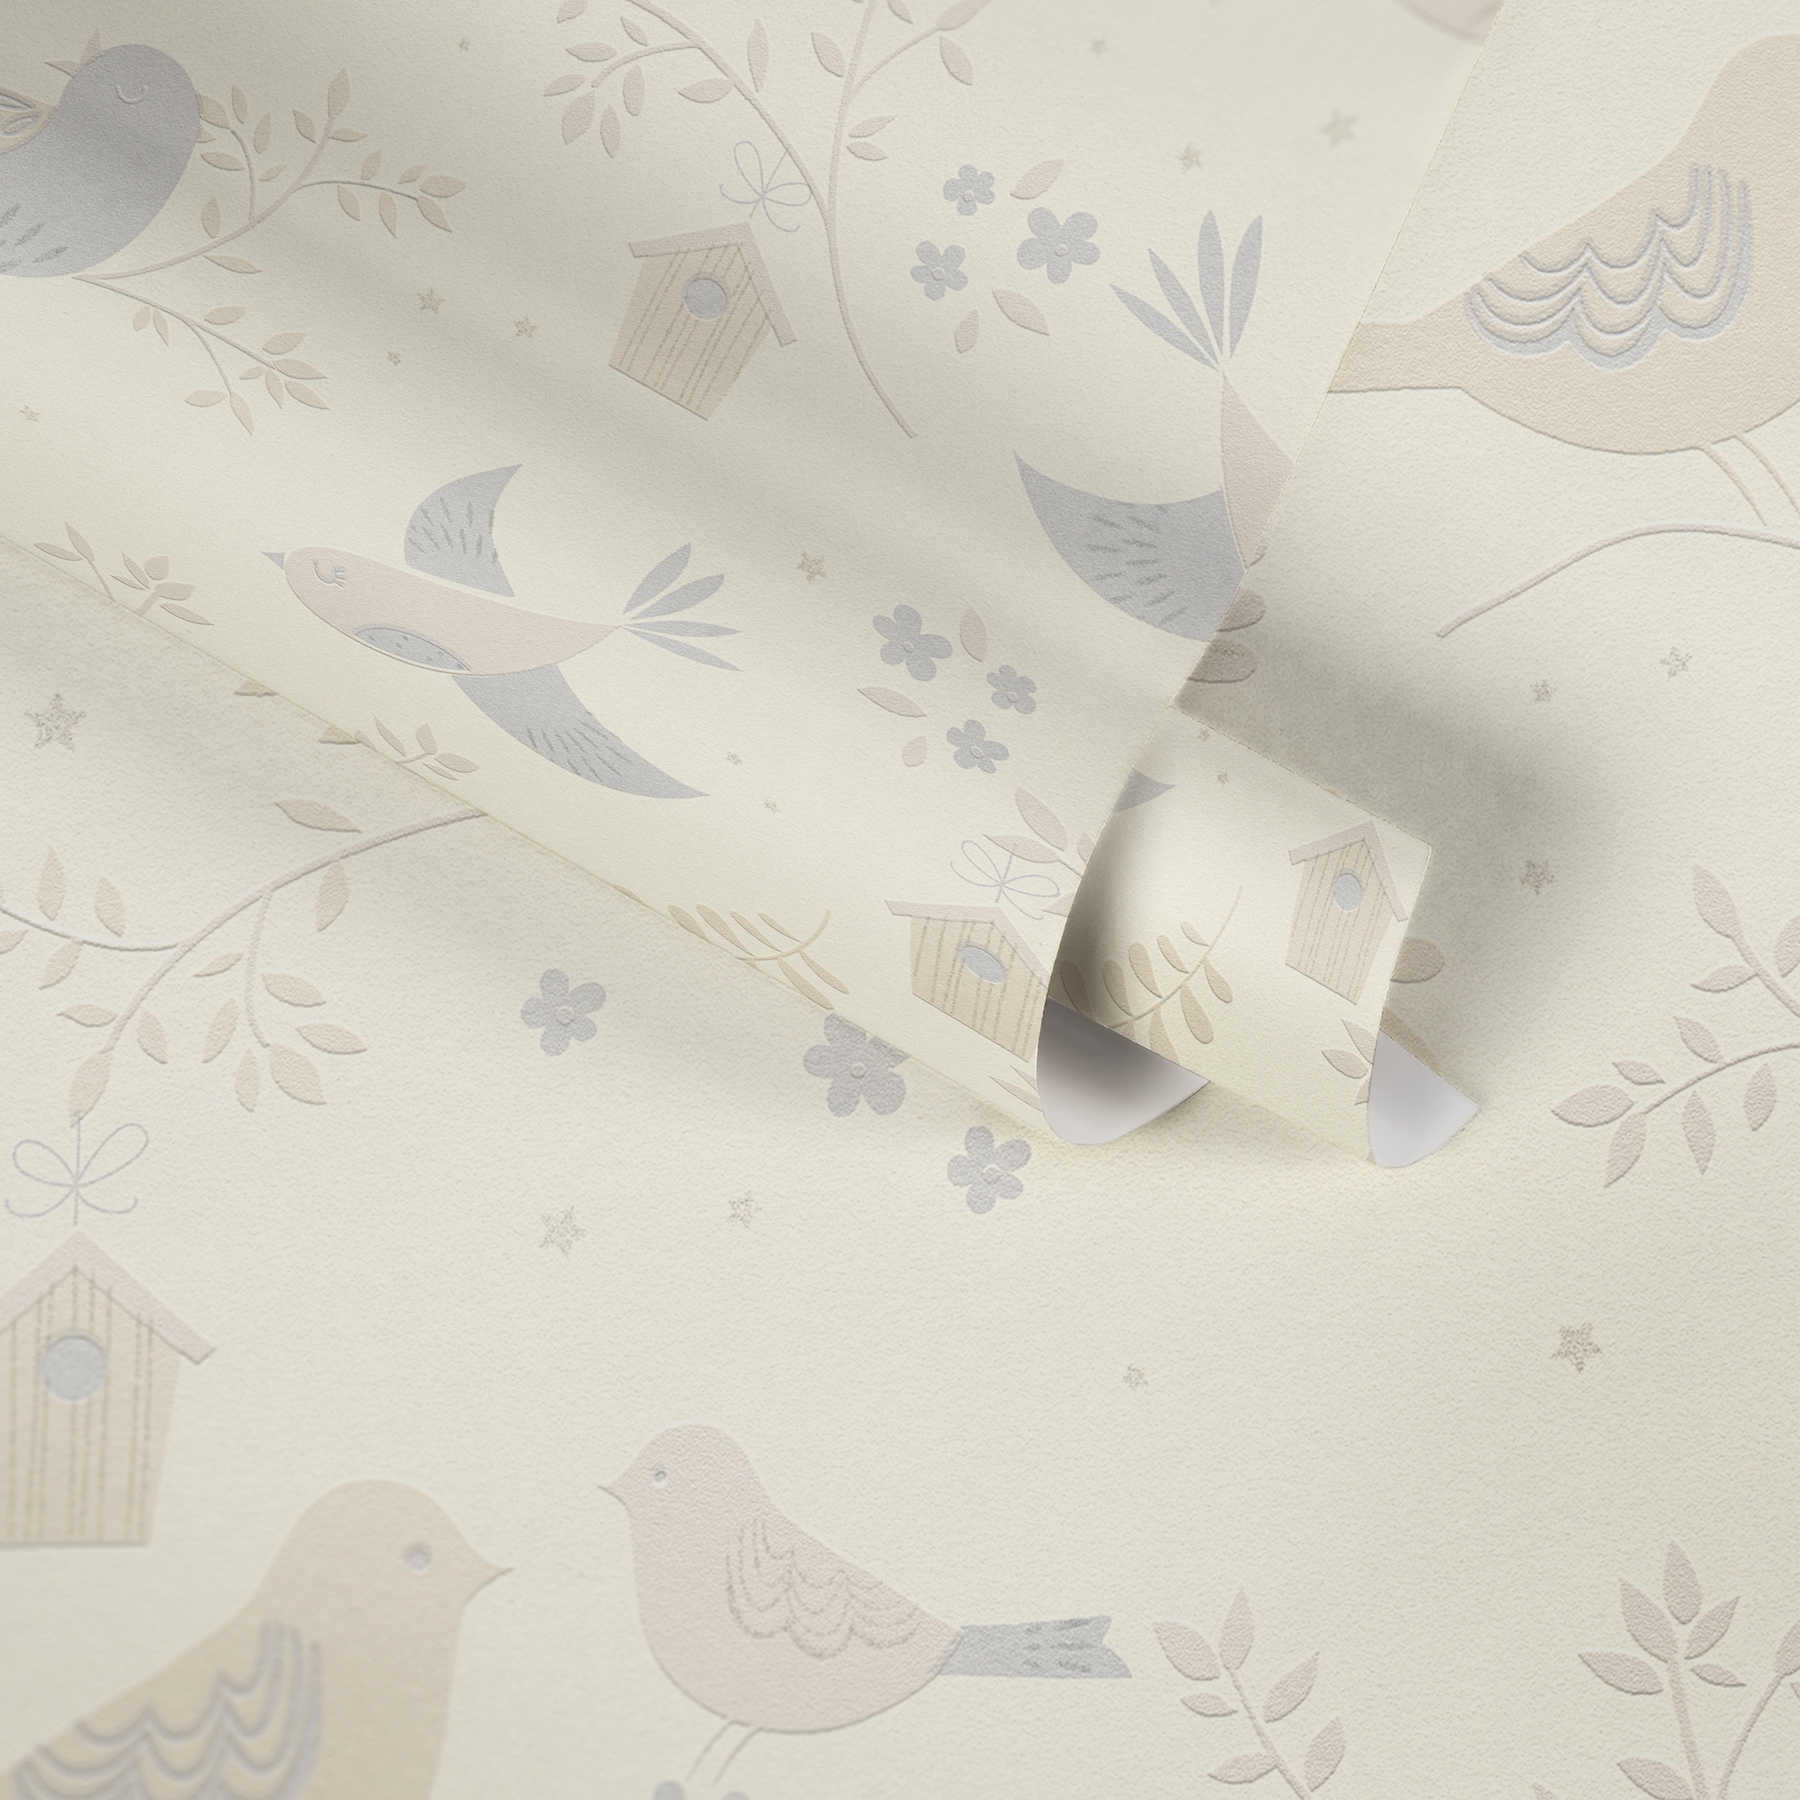             Papel pintado con motivos de pájaros y flores para la habitación del bebé - Beige, Gris
        